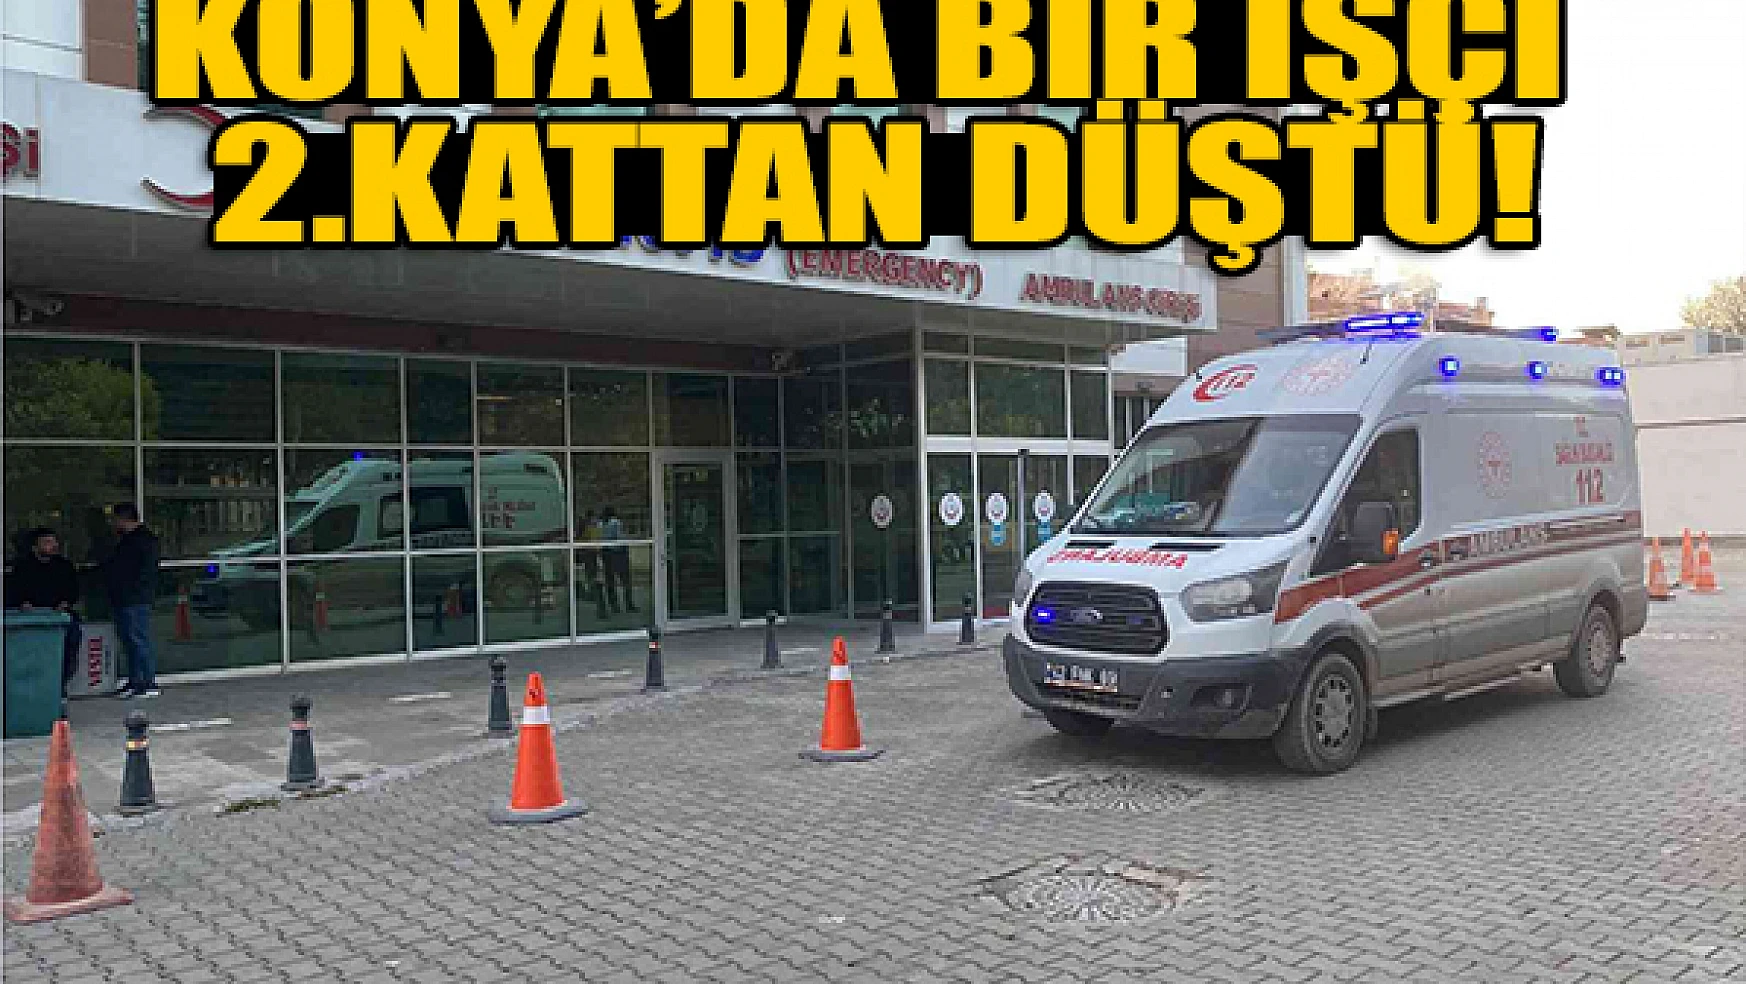 Konya'da bir işçi 2.kattan düştü!